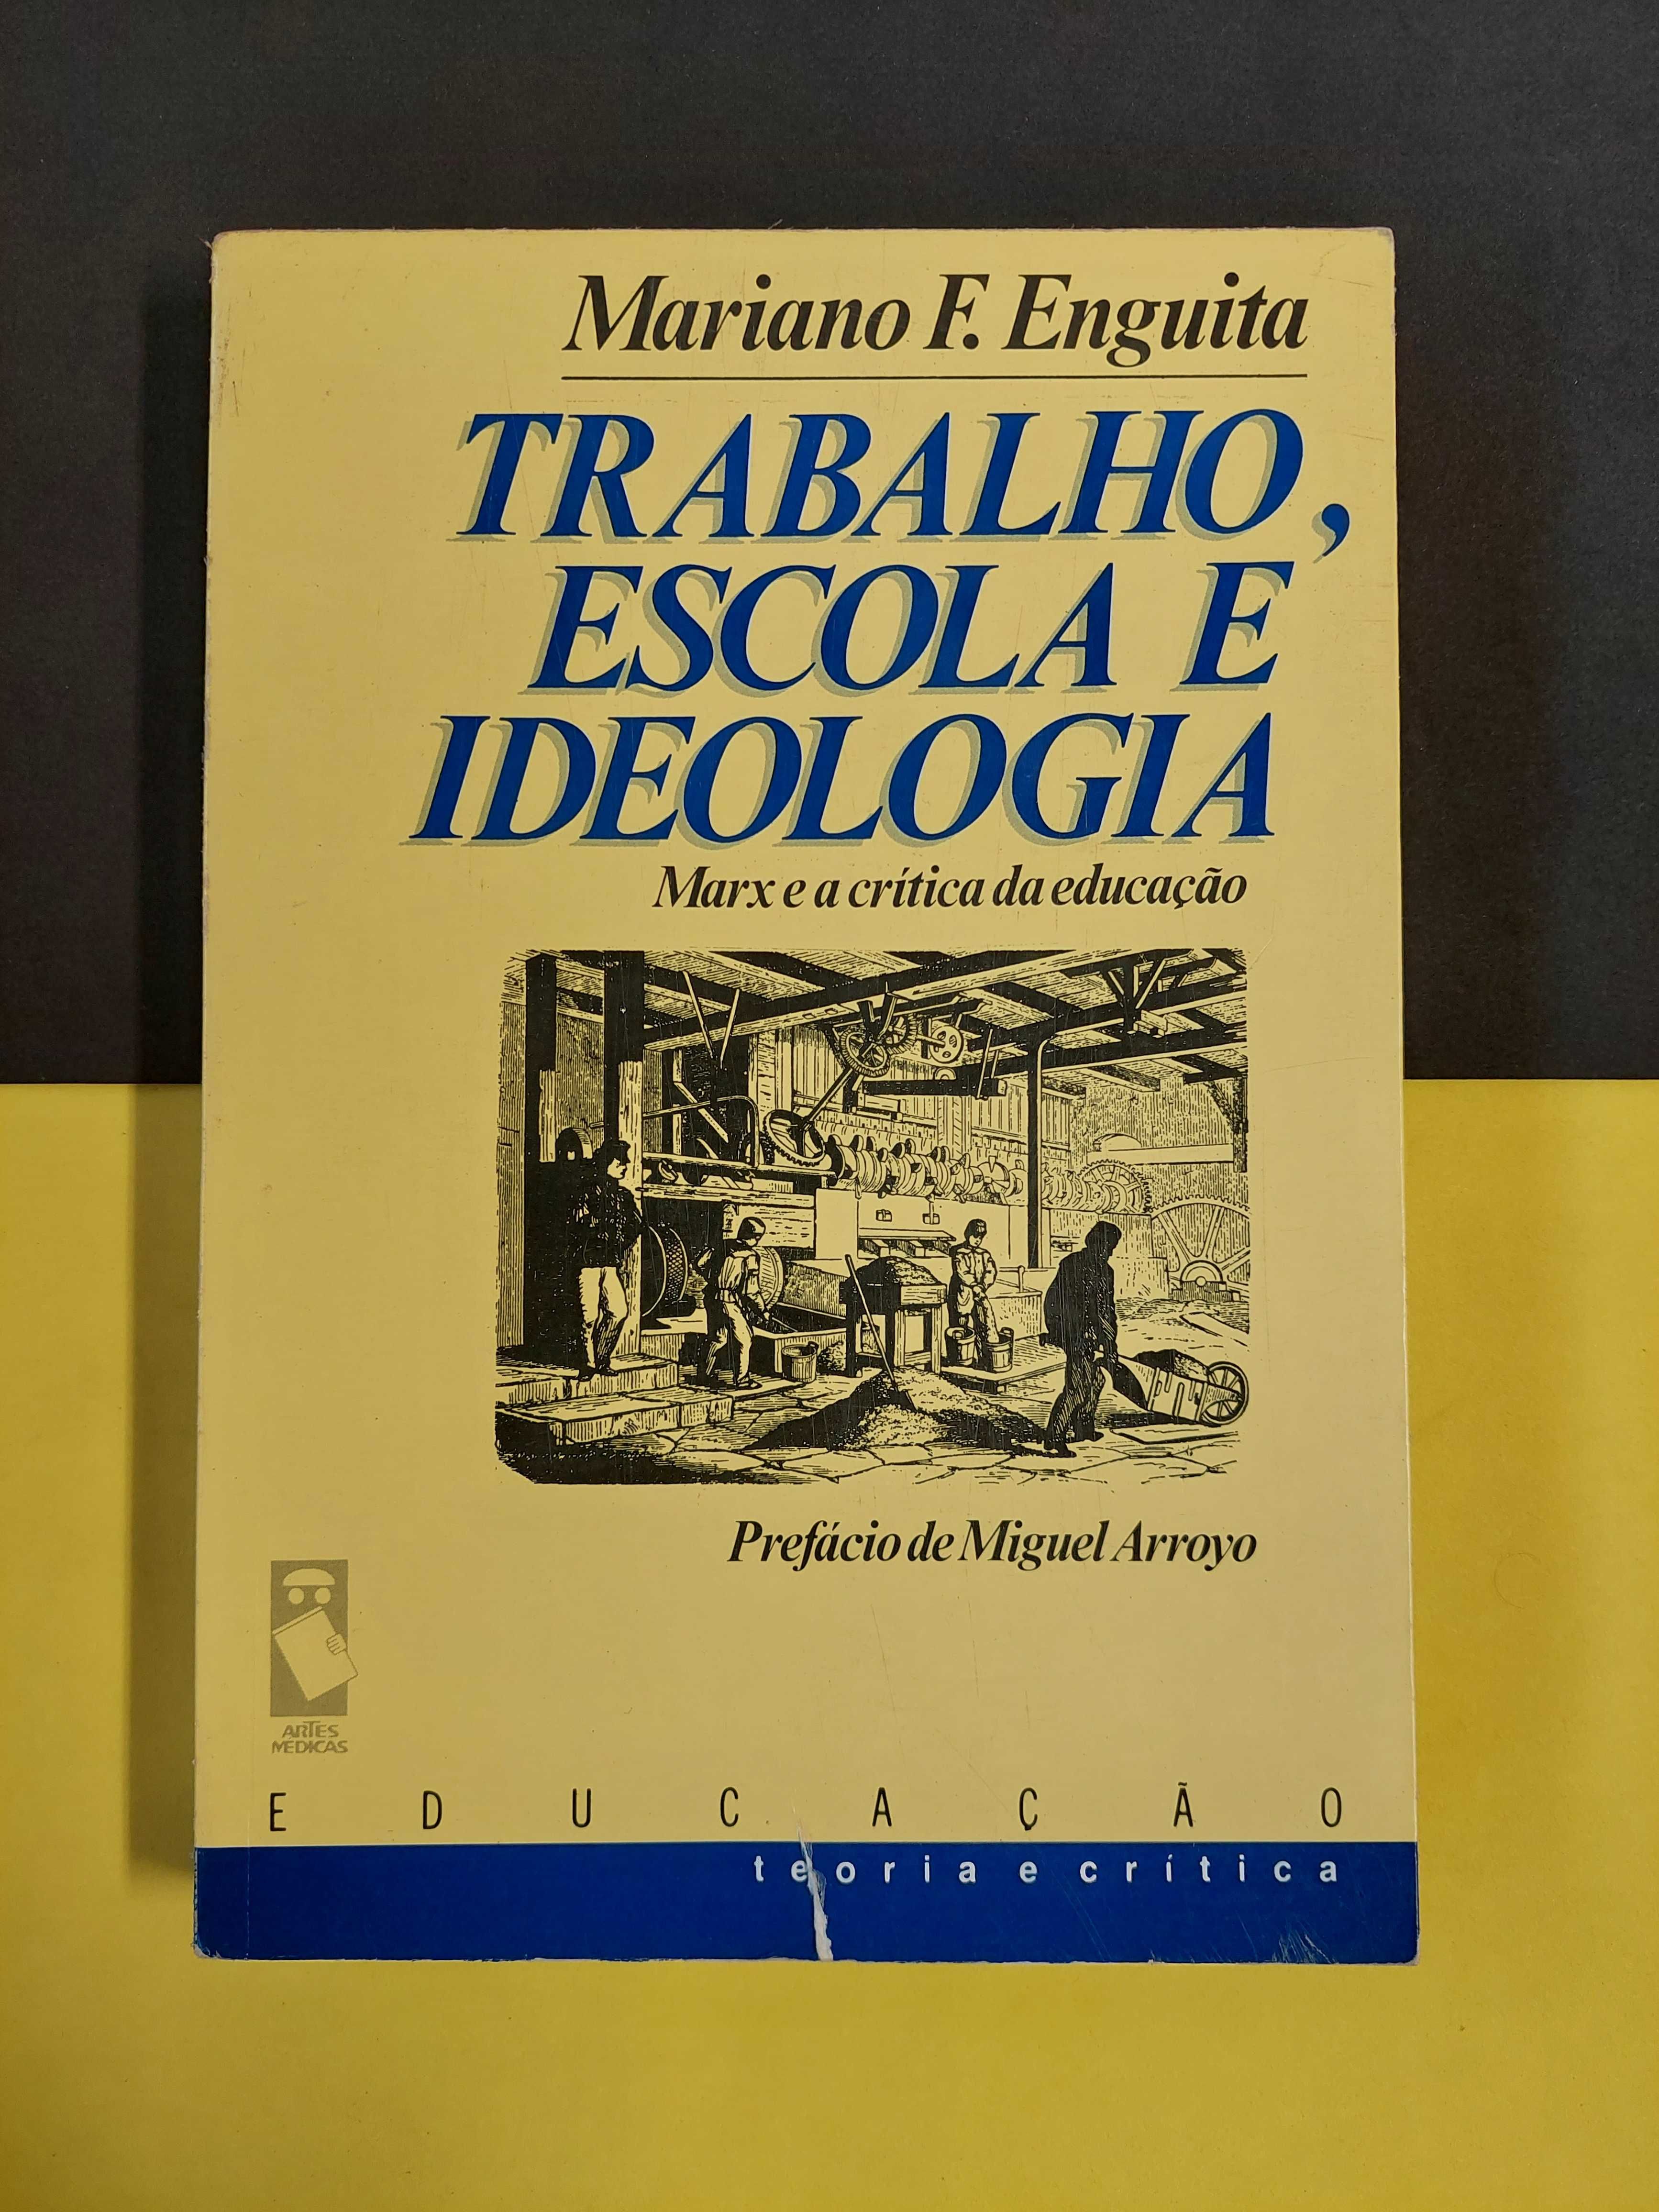 Mariano F. Enguita - Trabalho, escola e ideologia